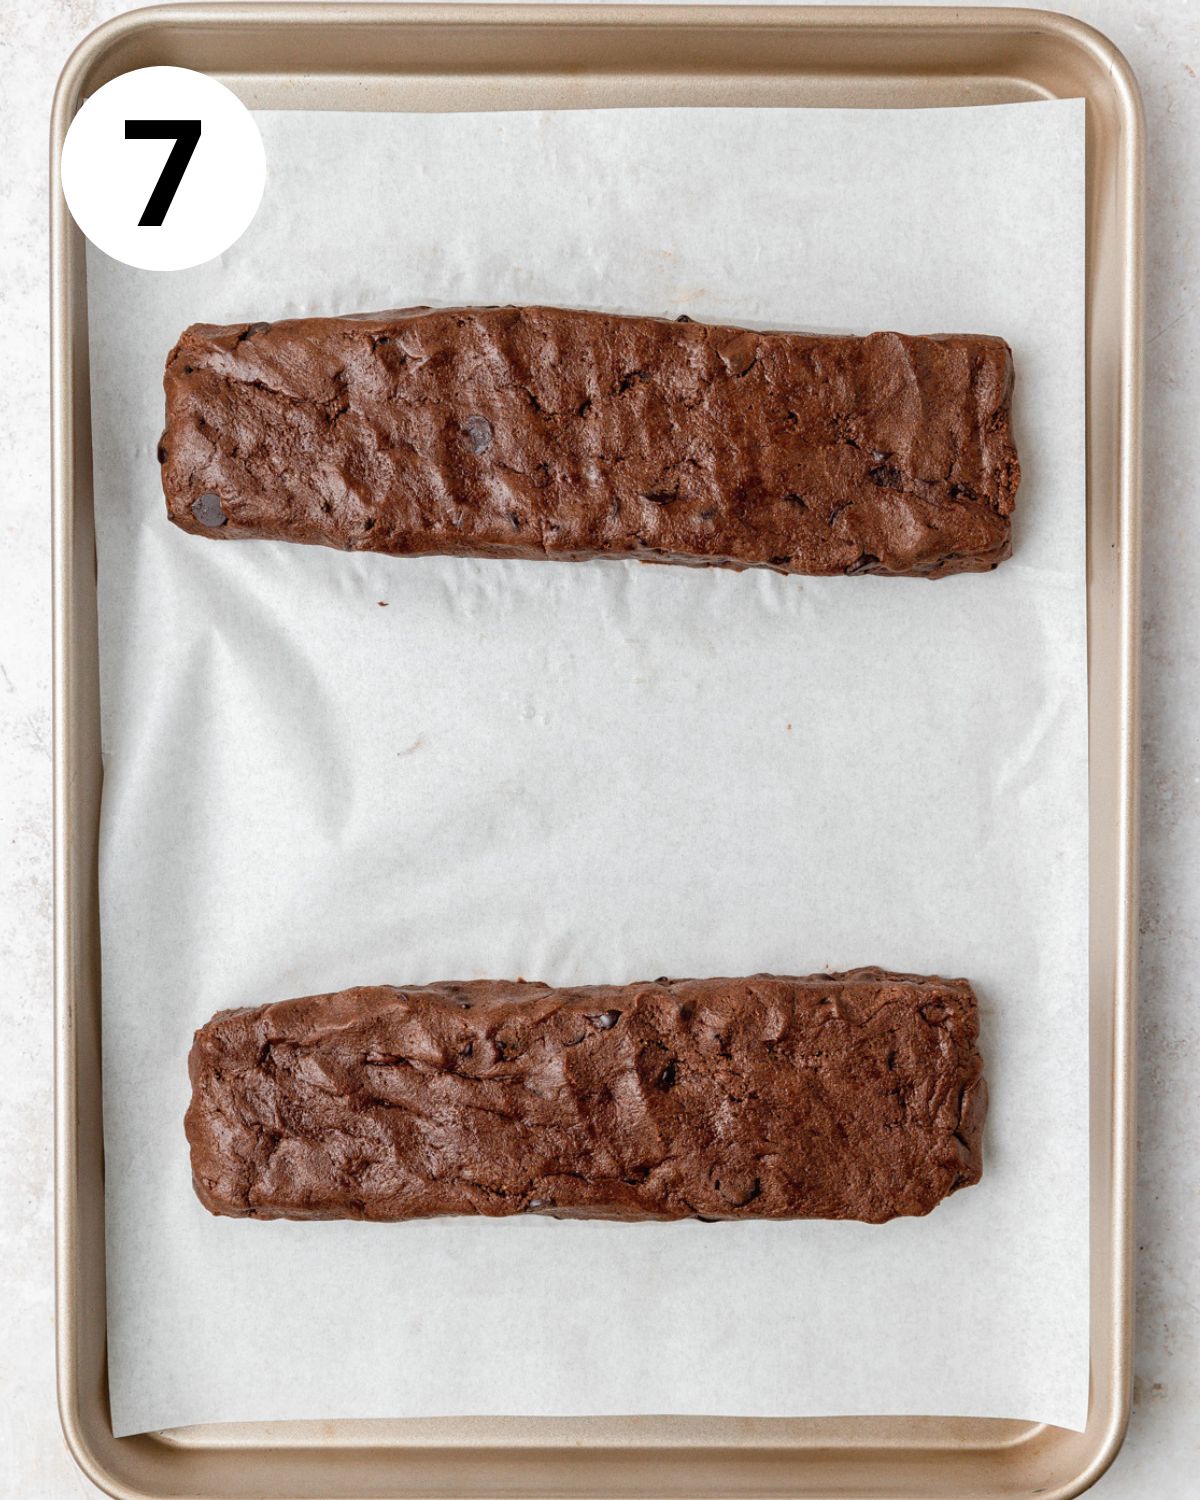 dark chocolate biscotti logs before baking.